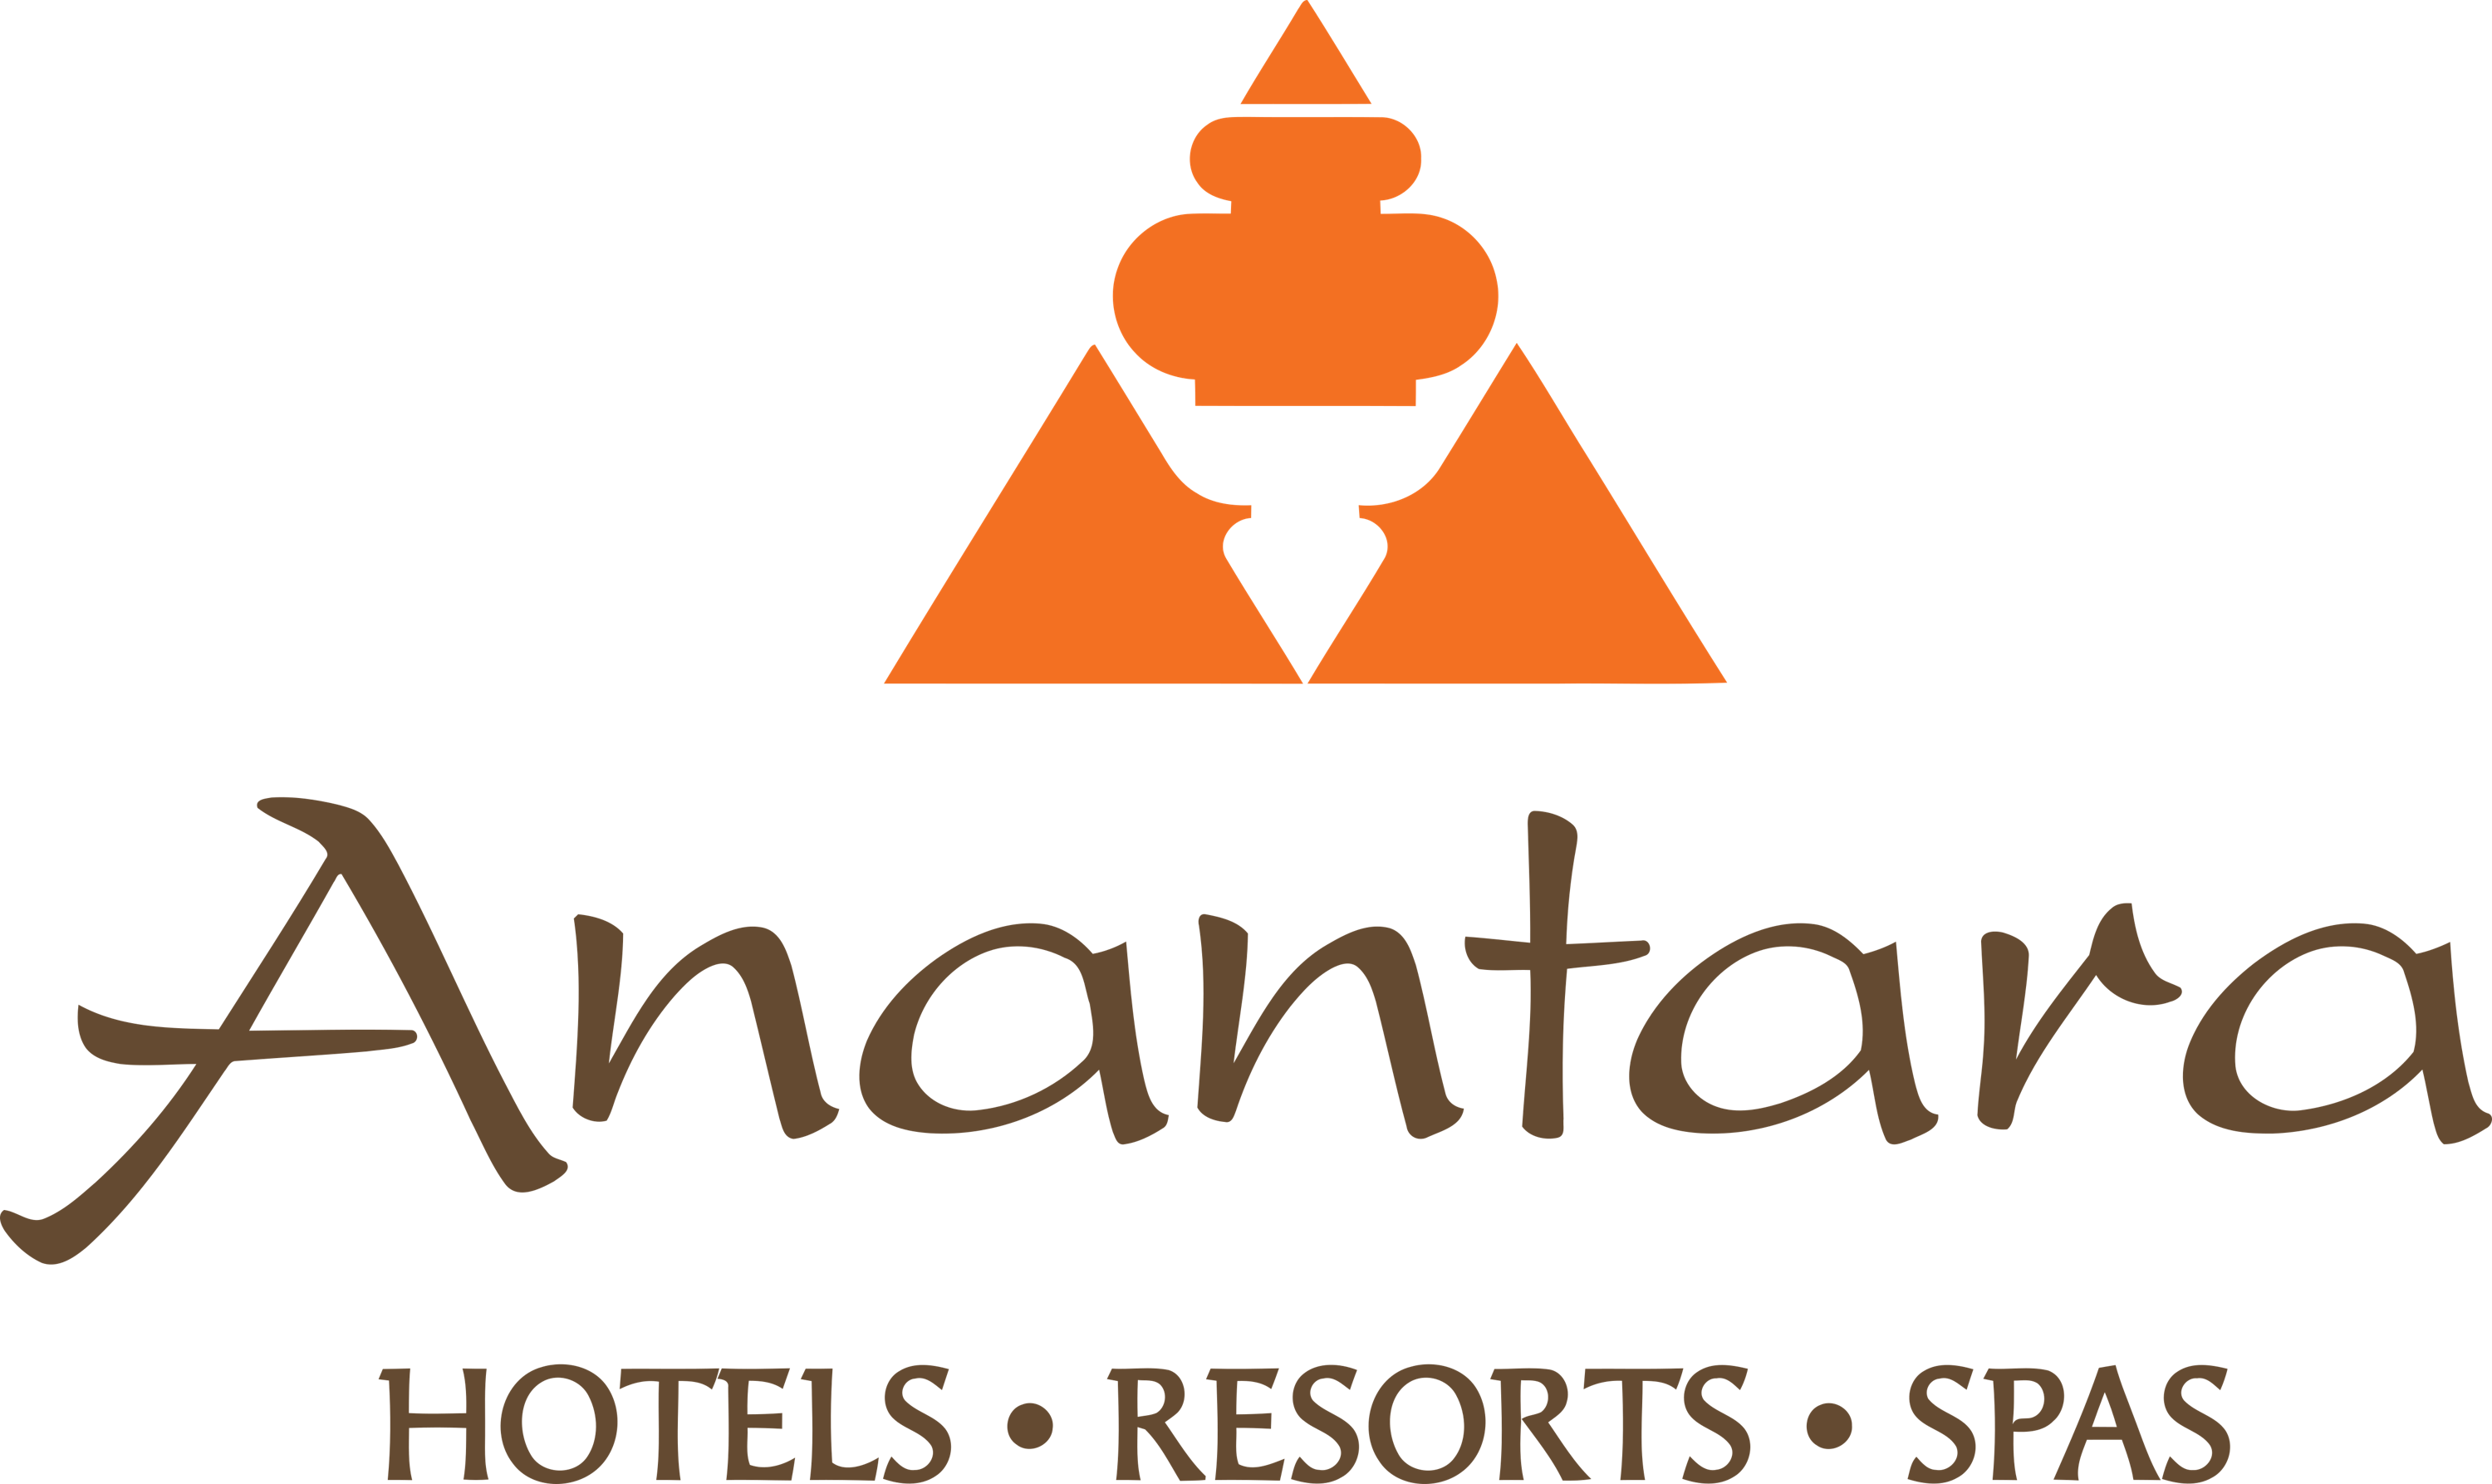 Anantara logo